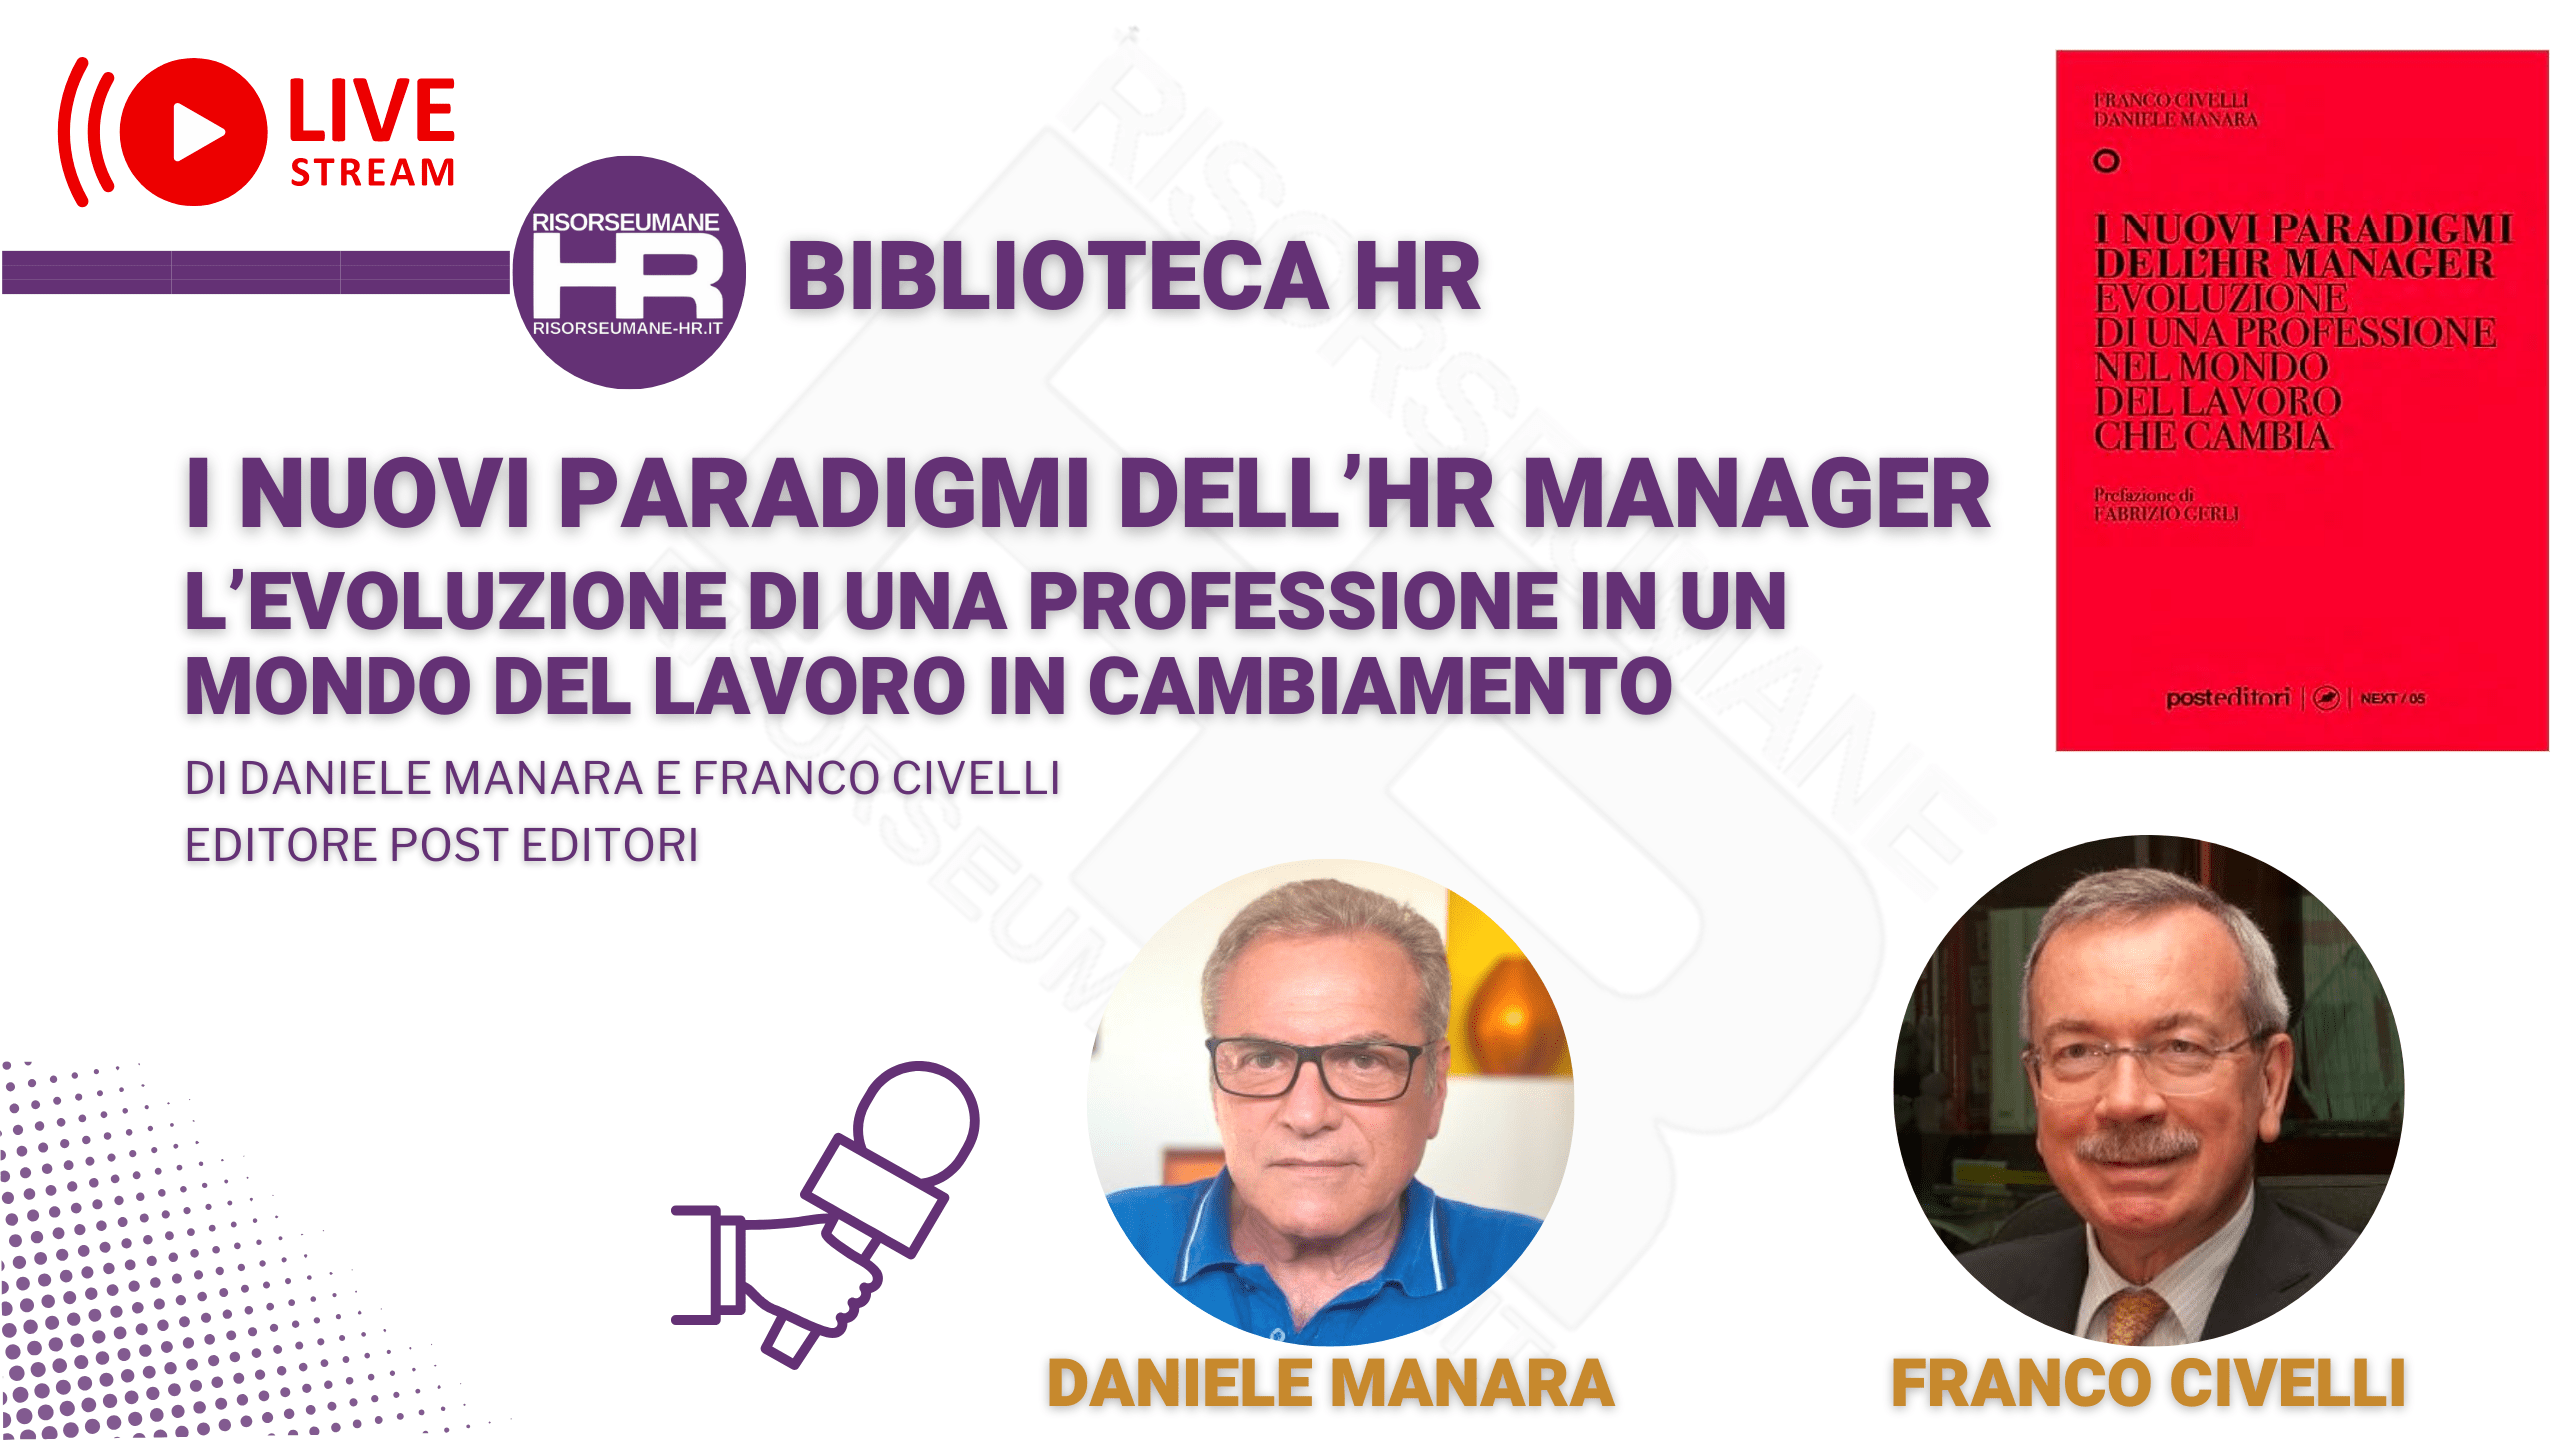 I nuovi paradigmi dell’HR manager (1)